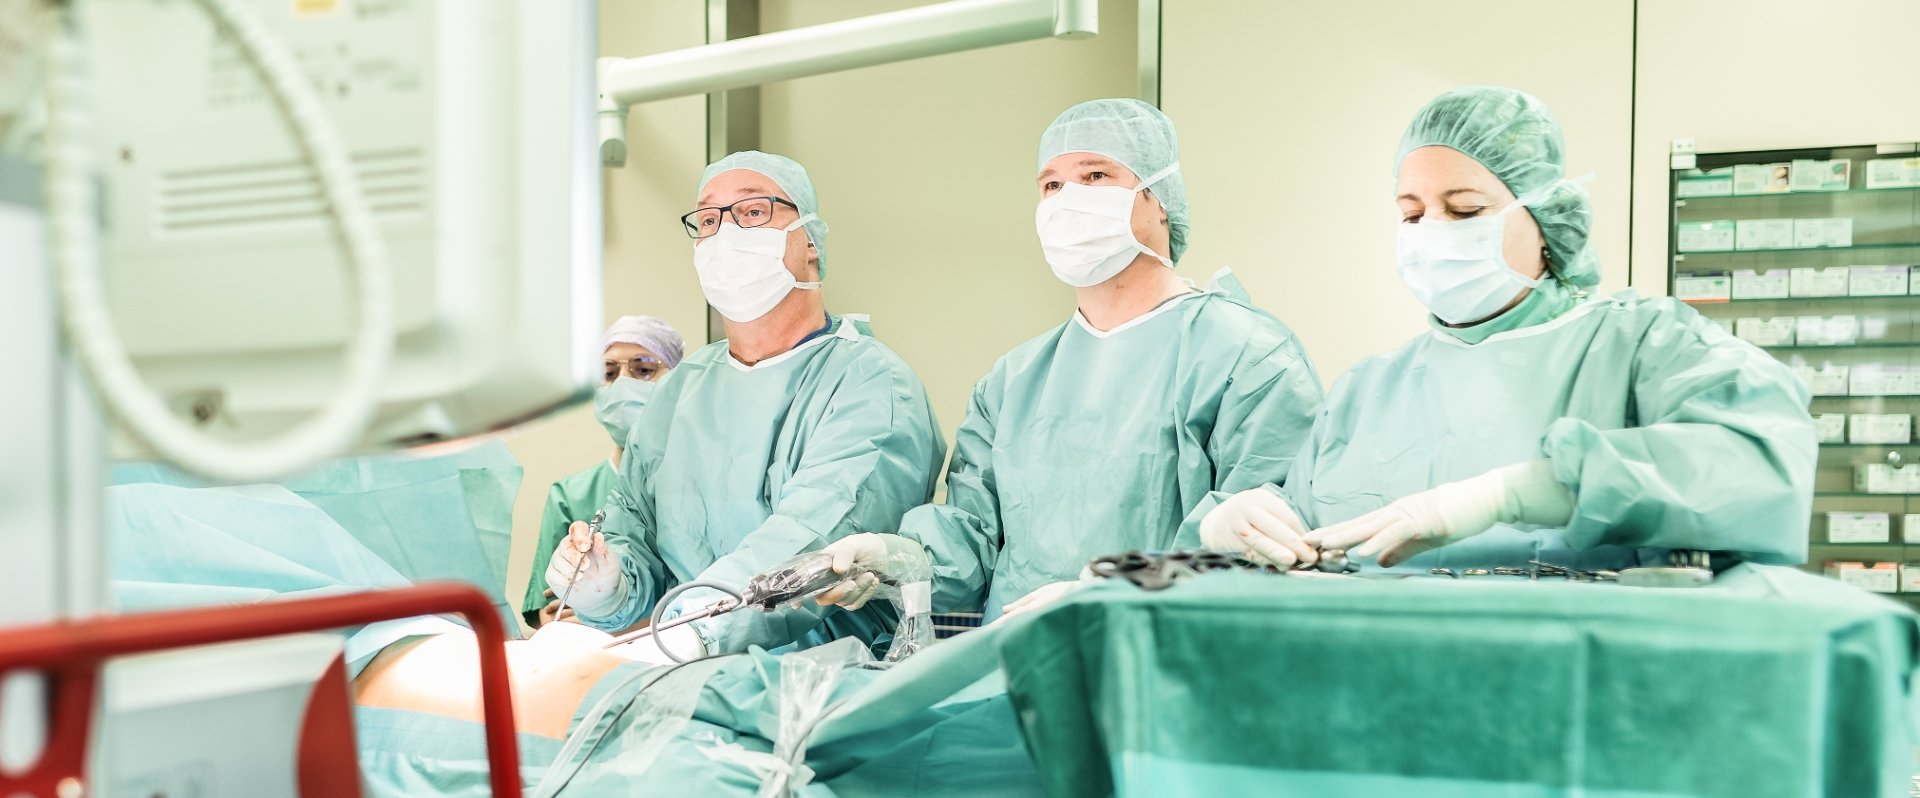 Medizinisches Personal steht bereit im Operationssaal